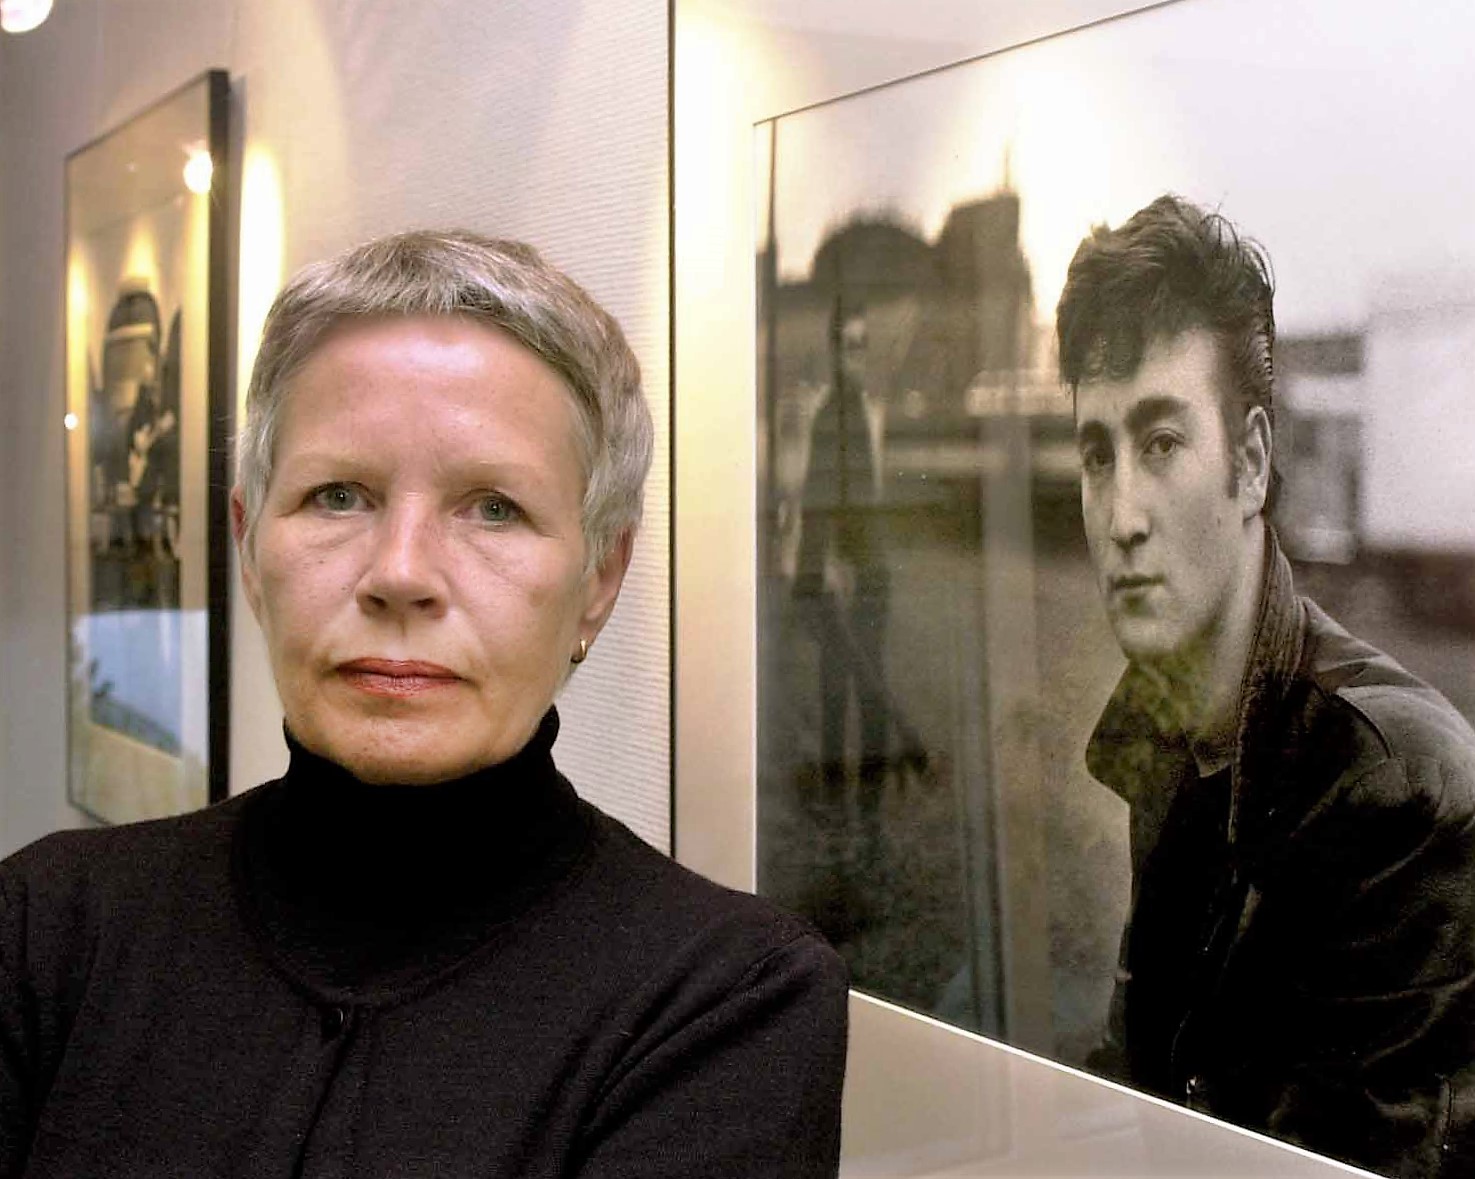 Una fotografía de Astrid Kirchherr en el 2000.  (Foto Prensa Libre: Ulrich Perrey / dpa / AFP).